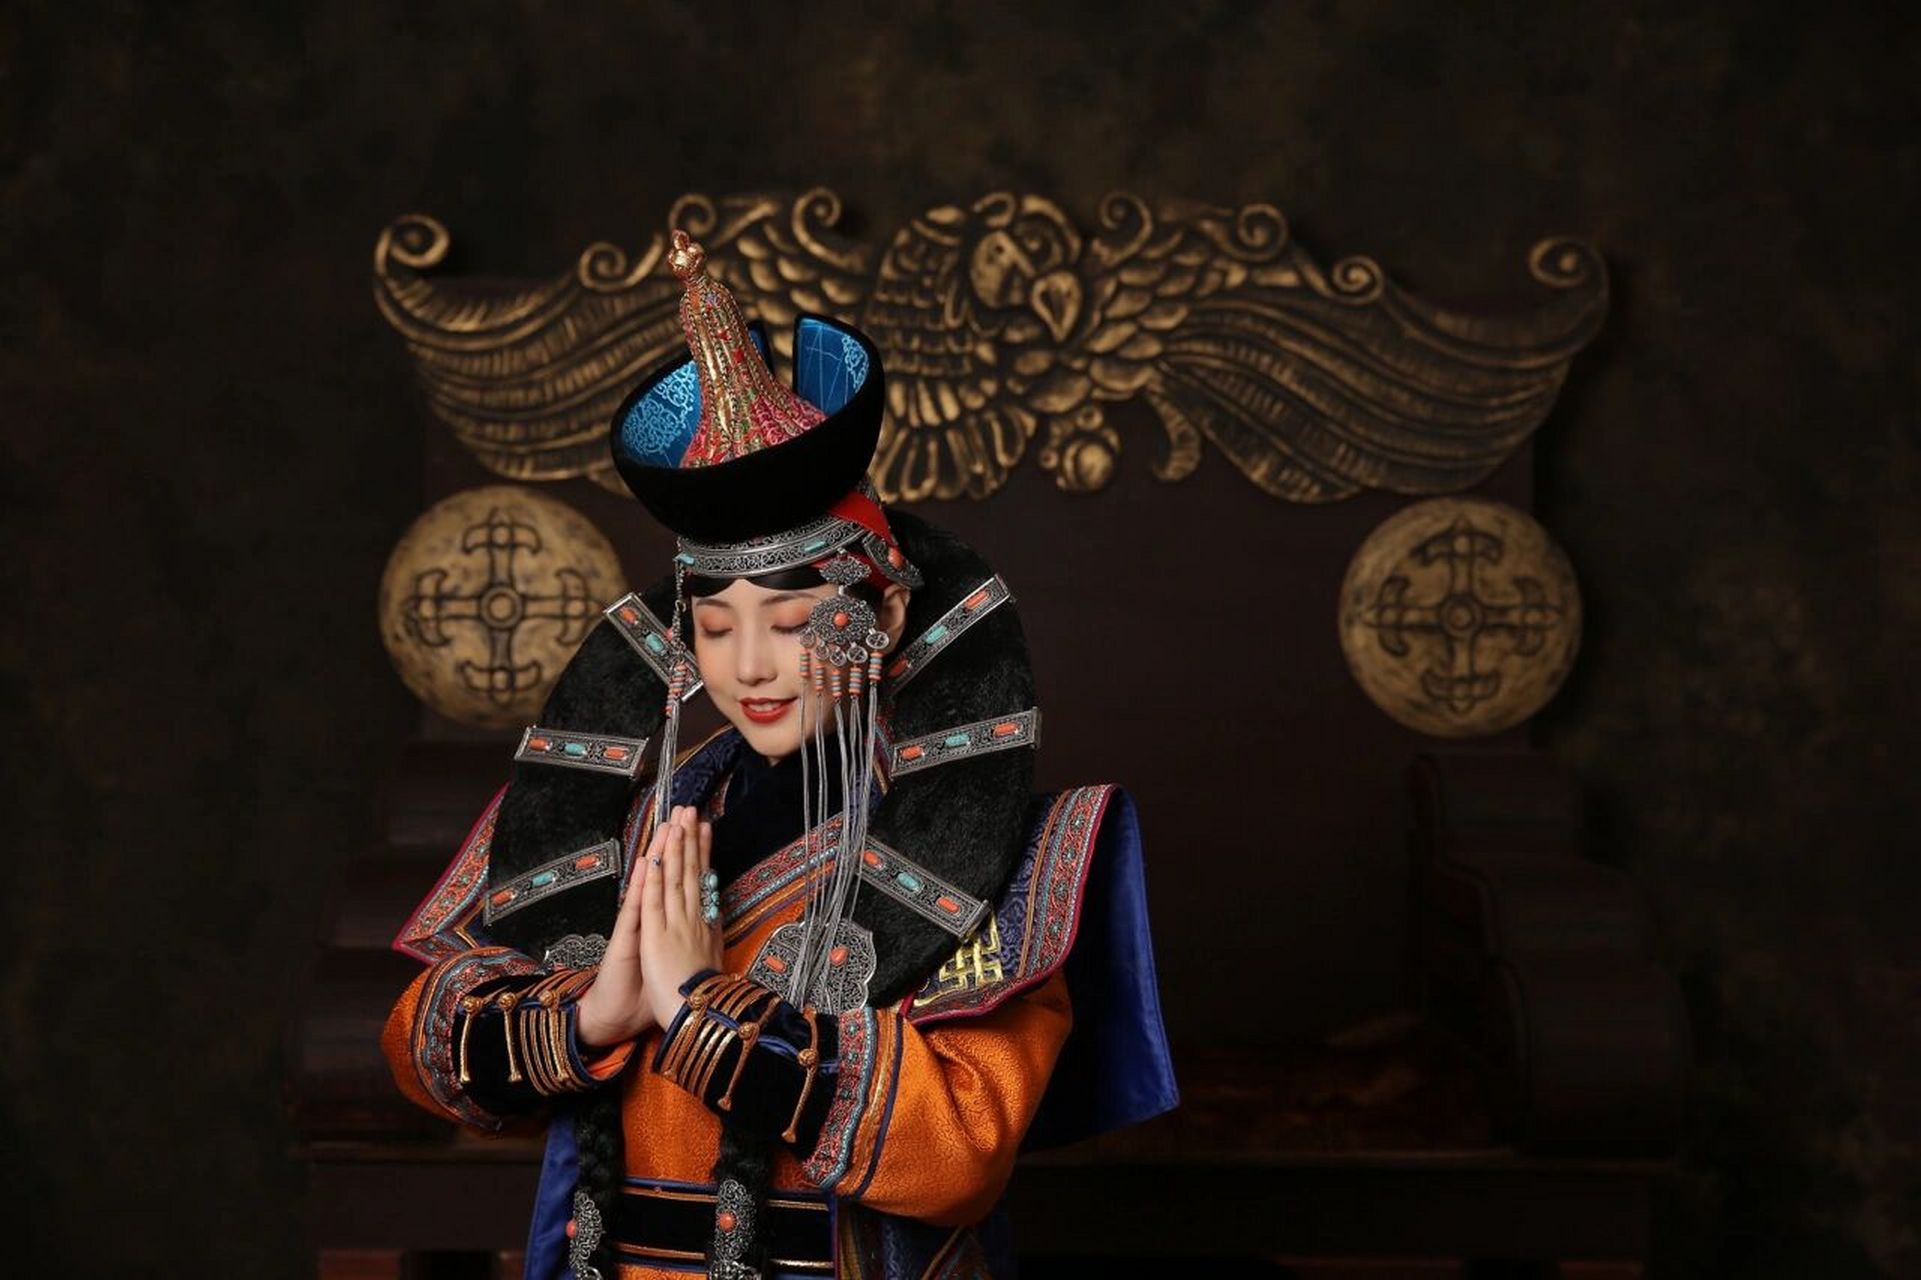 喀尔喀传统蒙古族服饰 喀尔喀服饰是蒙古族服饰中一个重要组成部分